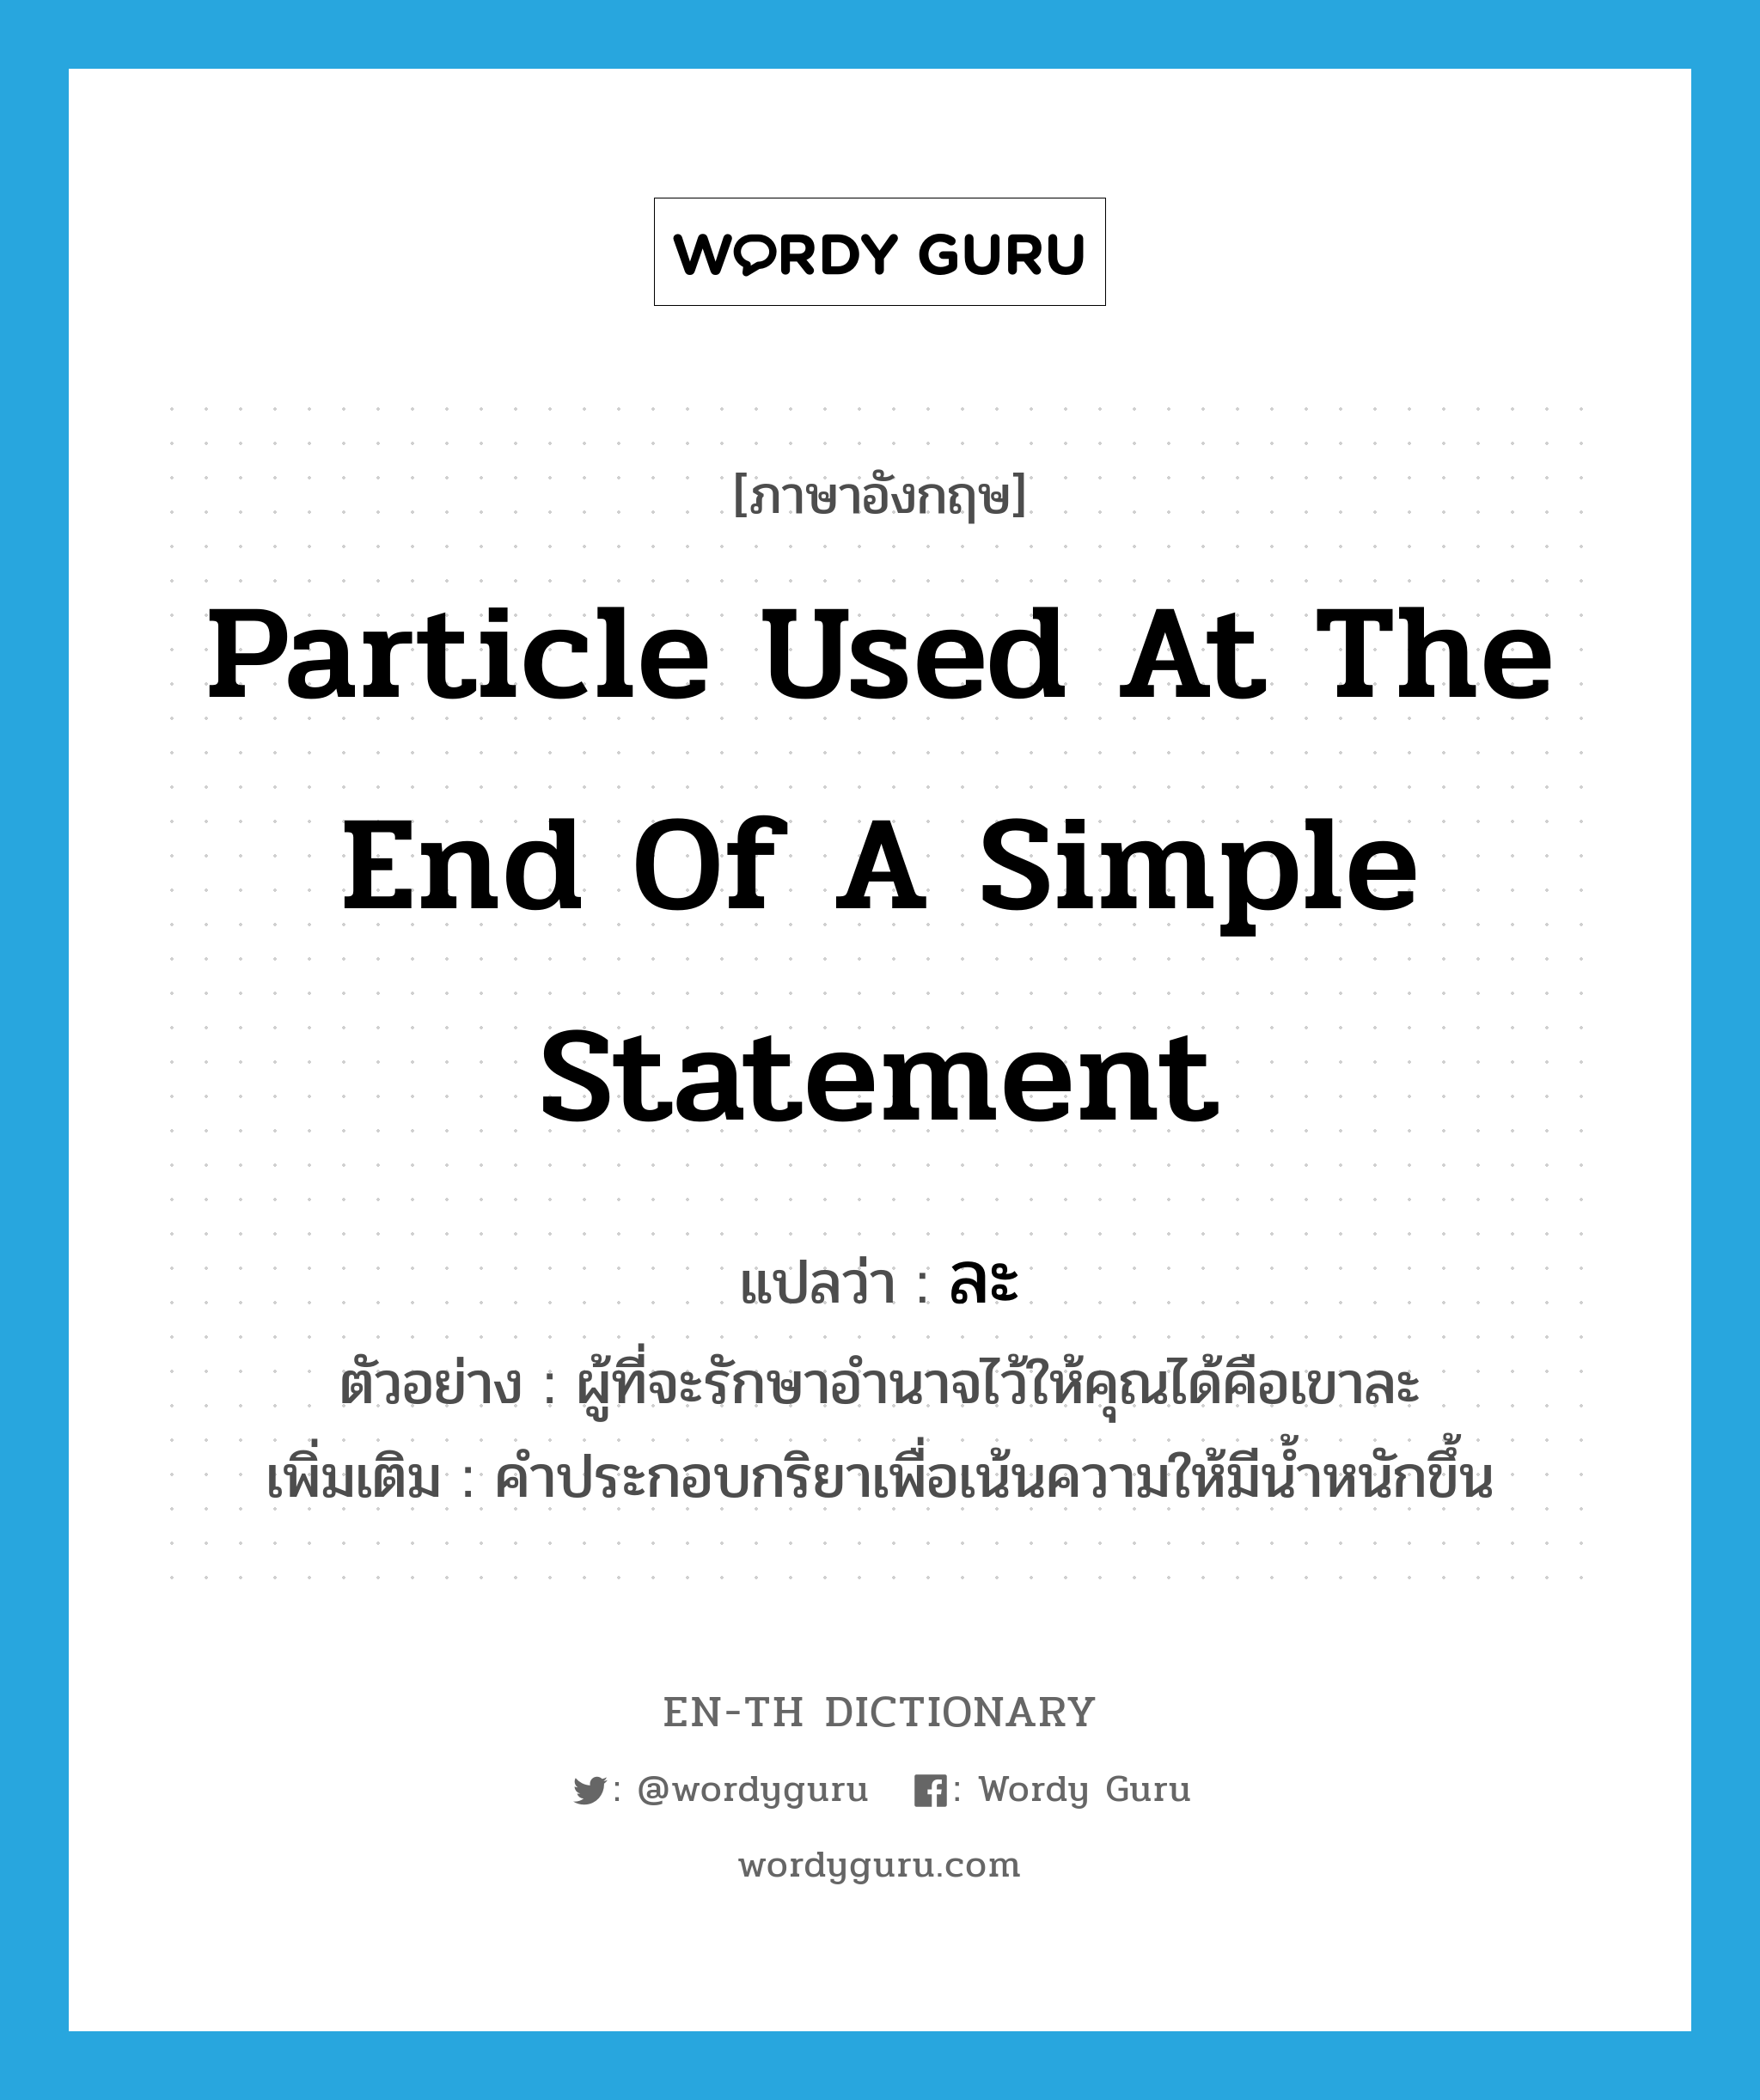 particle used at the end of a simple statement แปลว่า?, คำศัพท์ภาษาอังกฤษ particle used at the end of a simple statement แปลว่า ละ ประเภท END ตัวอย่าง ผู้ที่จะรักษาอำนาจไว้ให้คุณได้คือเขาละ เพิ่มเติม คำประกอบกริยาเพื่อเน้นความให้มีน้ำหนักขึ้น หมวด END